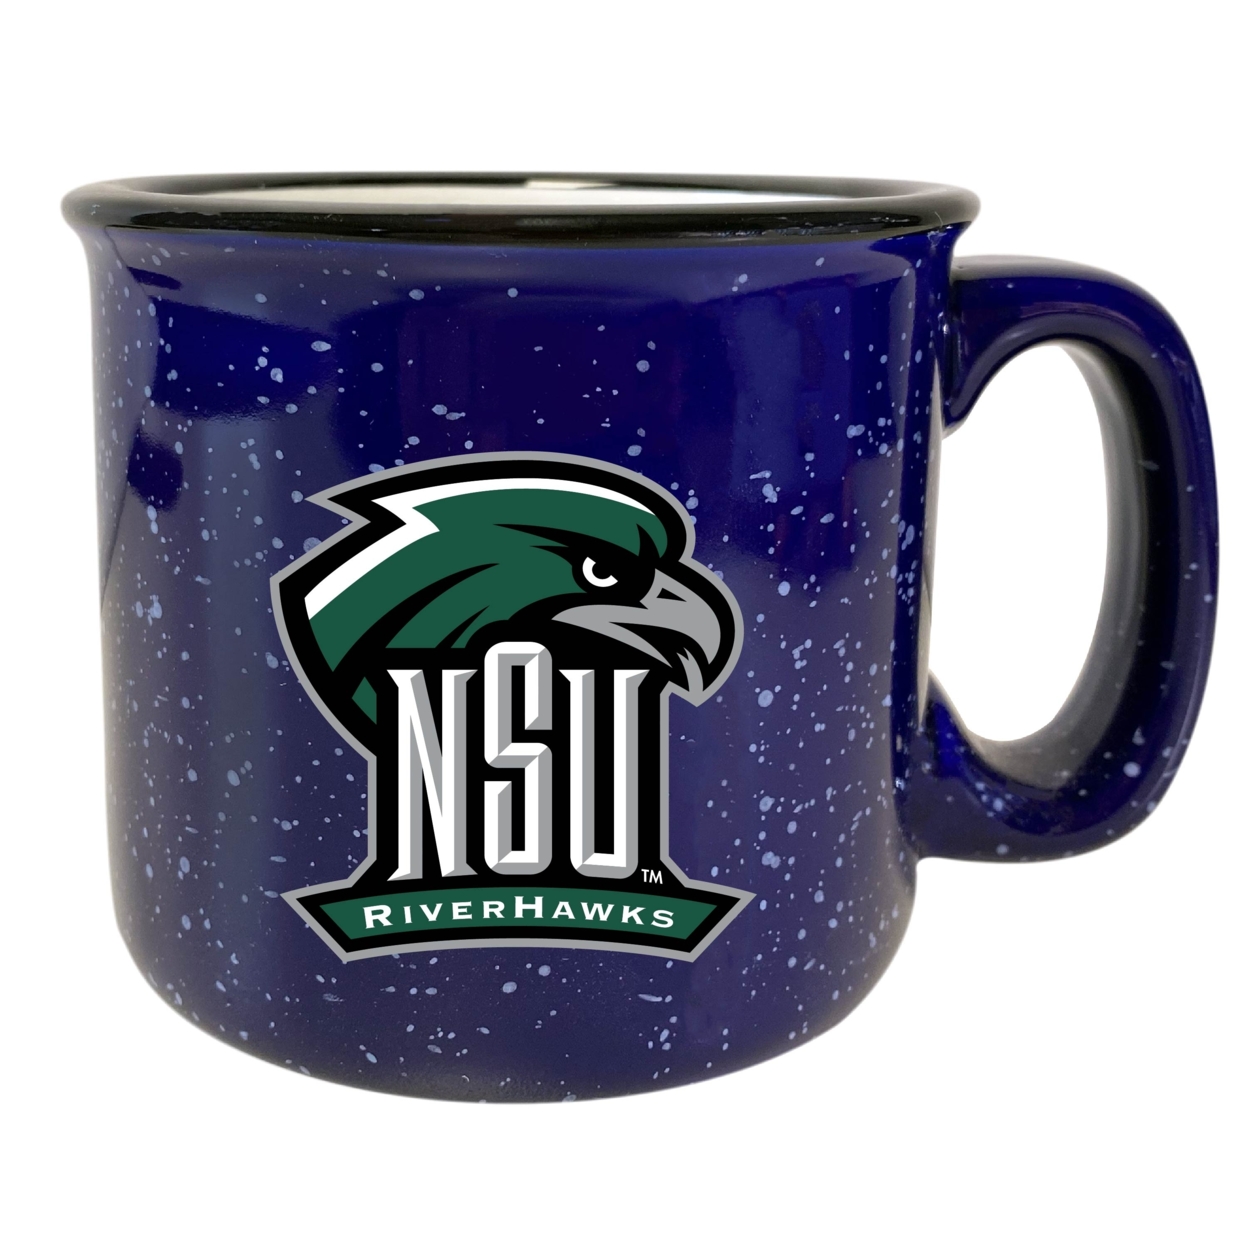 Northeastern State University Riverhawks Ceramic Camper Mug - Choose Your Color - Navy